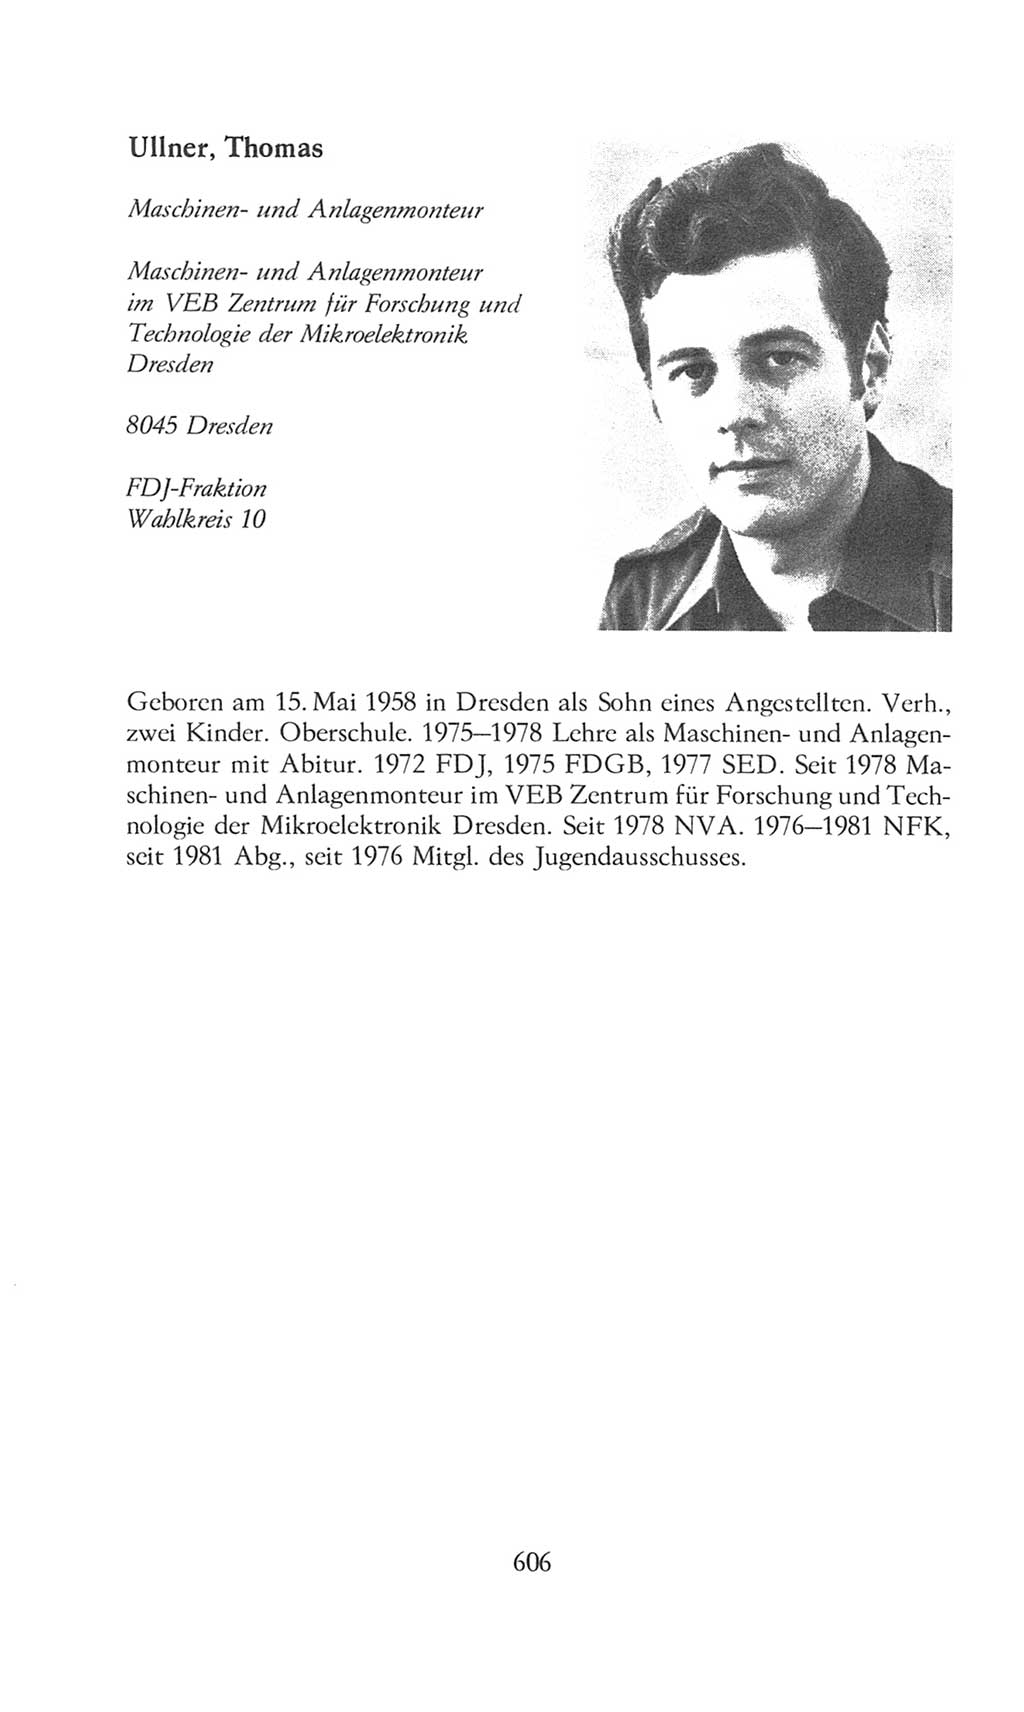 Volkskammer (VK) der Deutschen Demokratischen Republik (DDR), 8. Wahlperiode 1981-1986, Seite 606 (VK. DDR 8. WP. 1981-1986, S. 606)